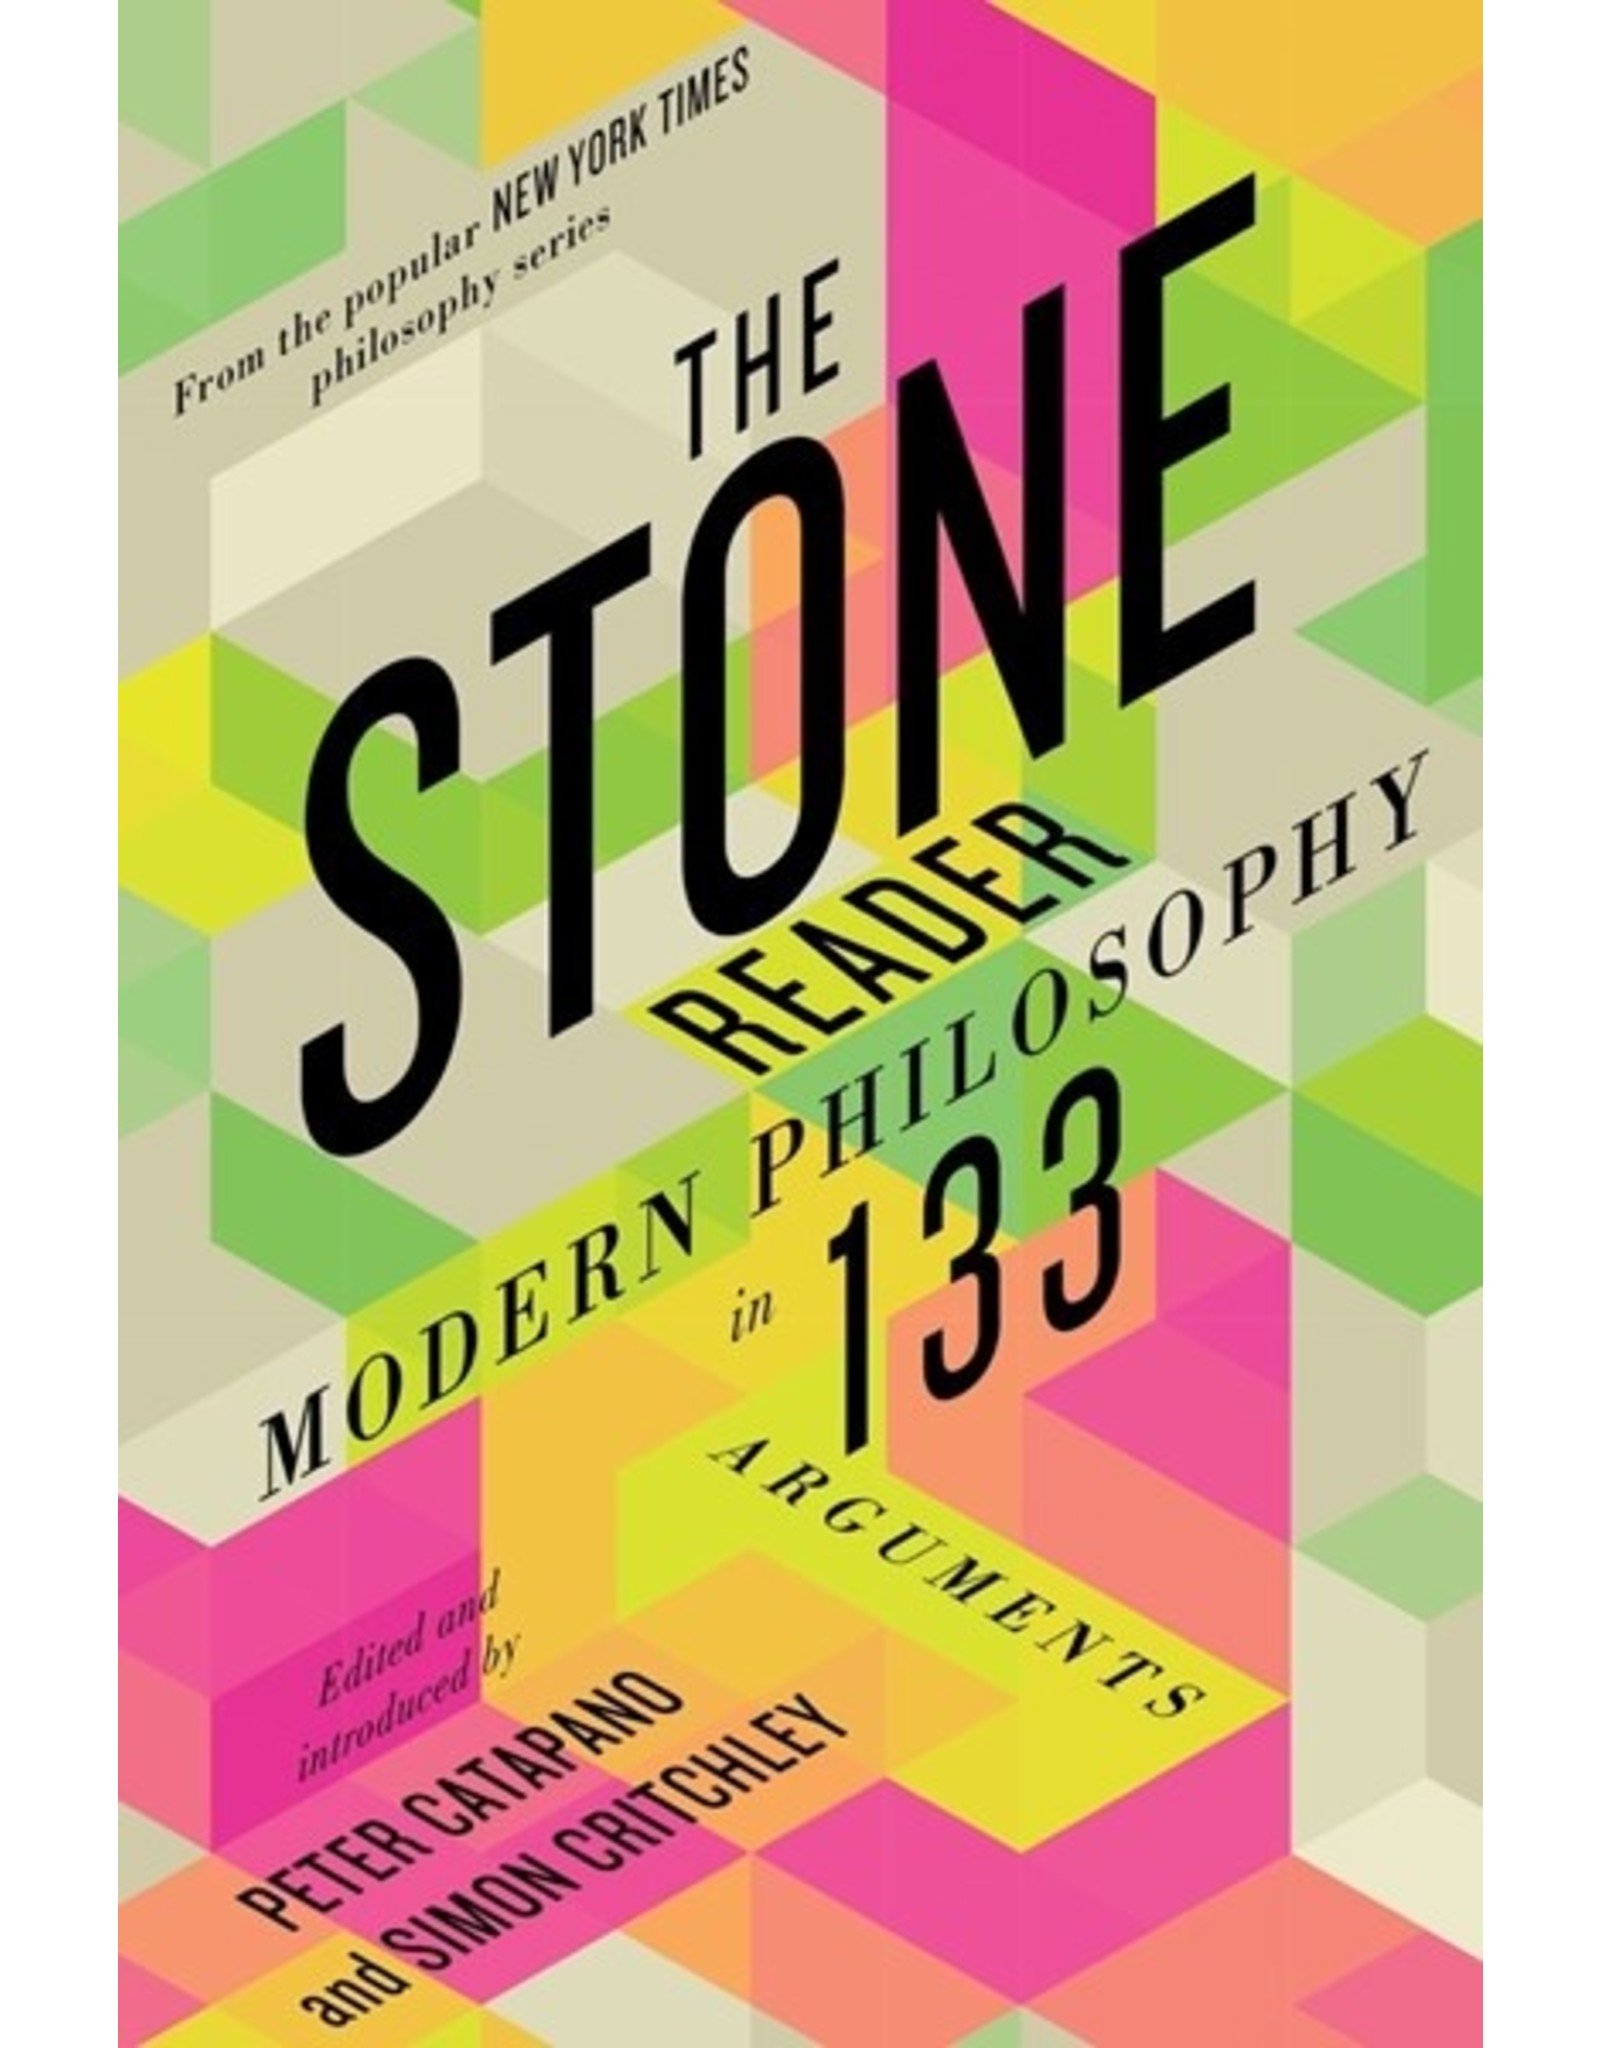 books-the-stone-reader-modern-philosophy-in-133-ar.jpg